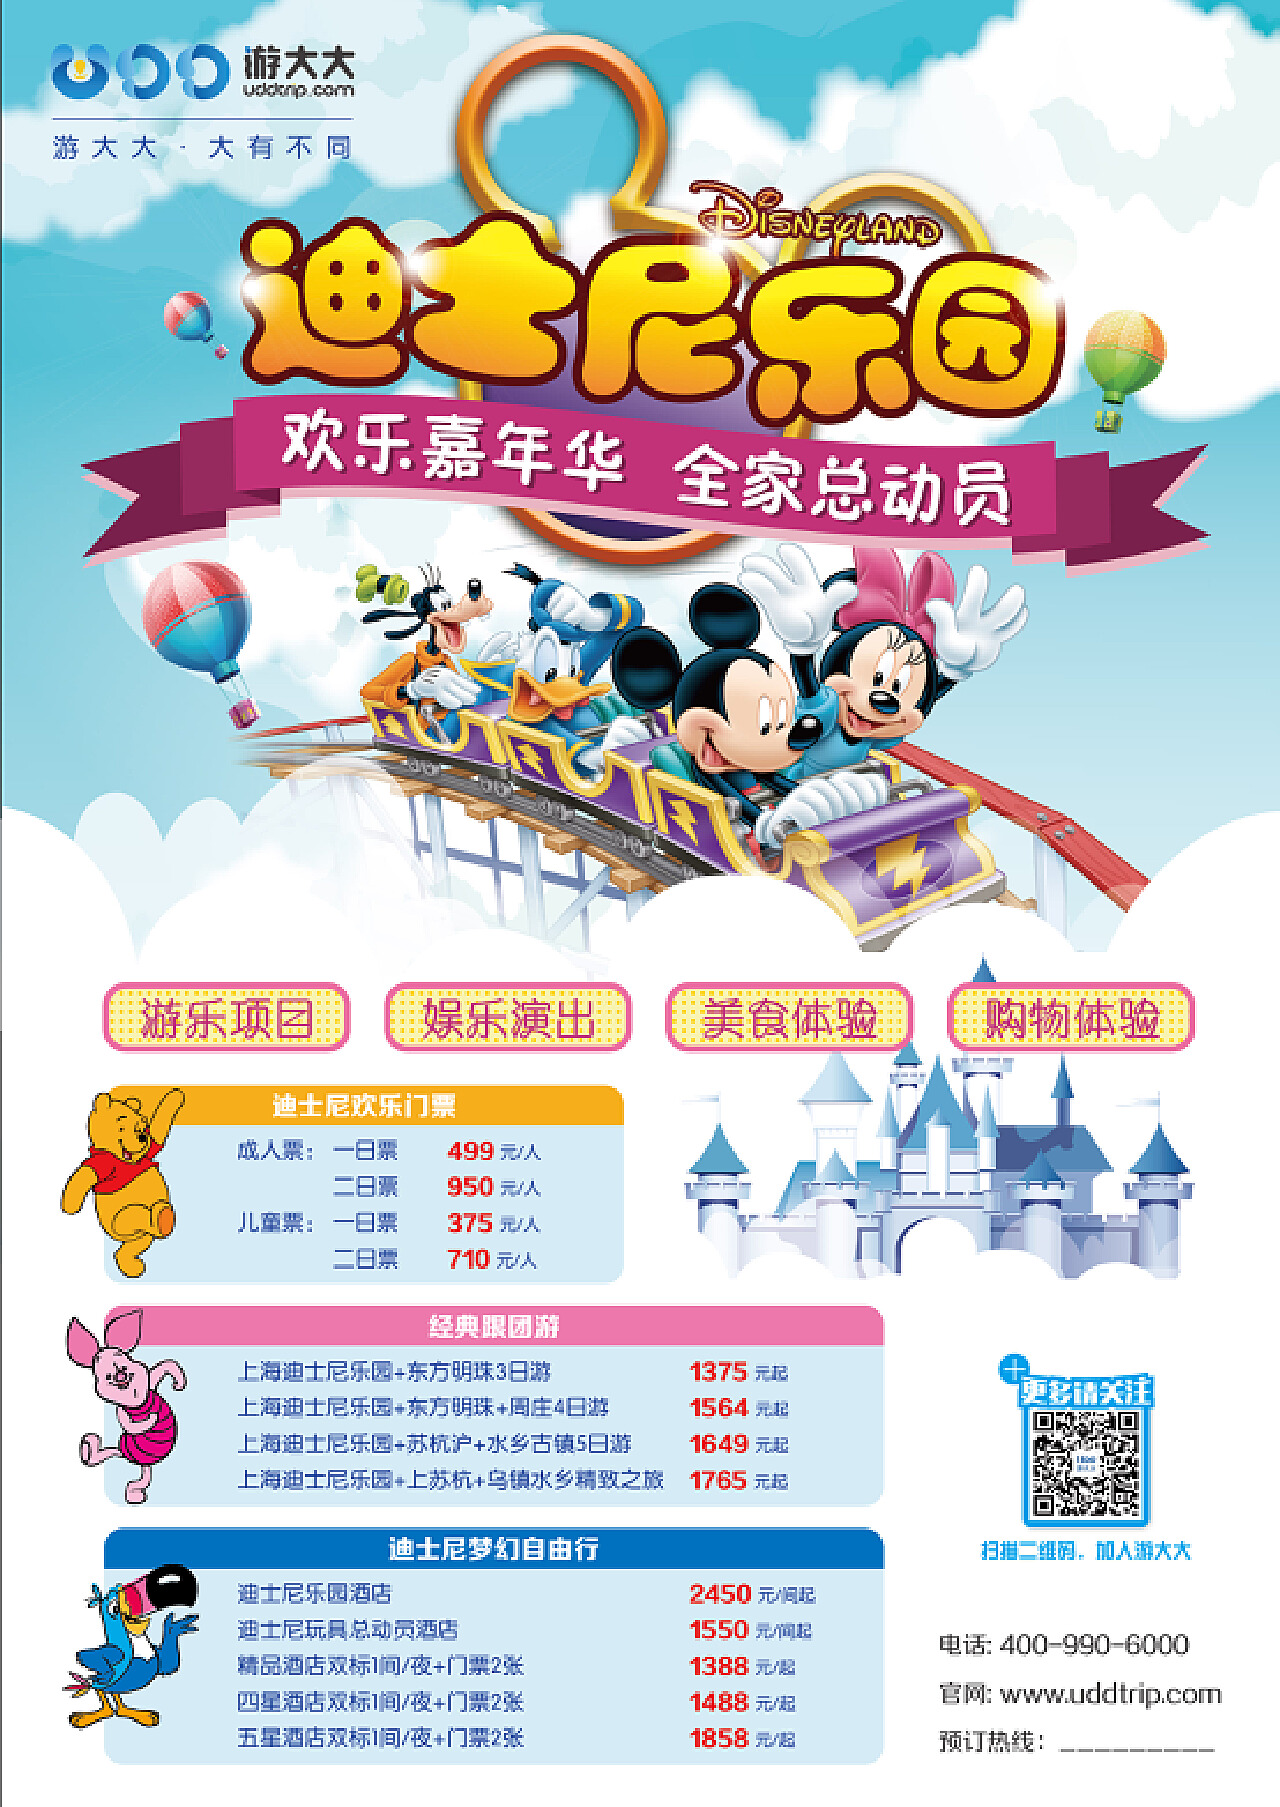 上海迪士尼購票Q&A：每人最多買5張、平日票1800元 | ETtoday旅遊雲 | ETtoday新聞雲